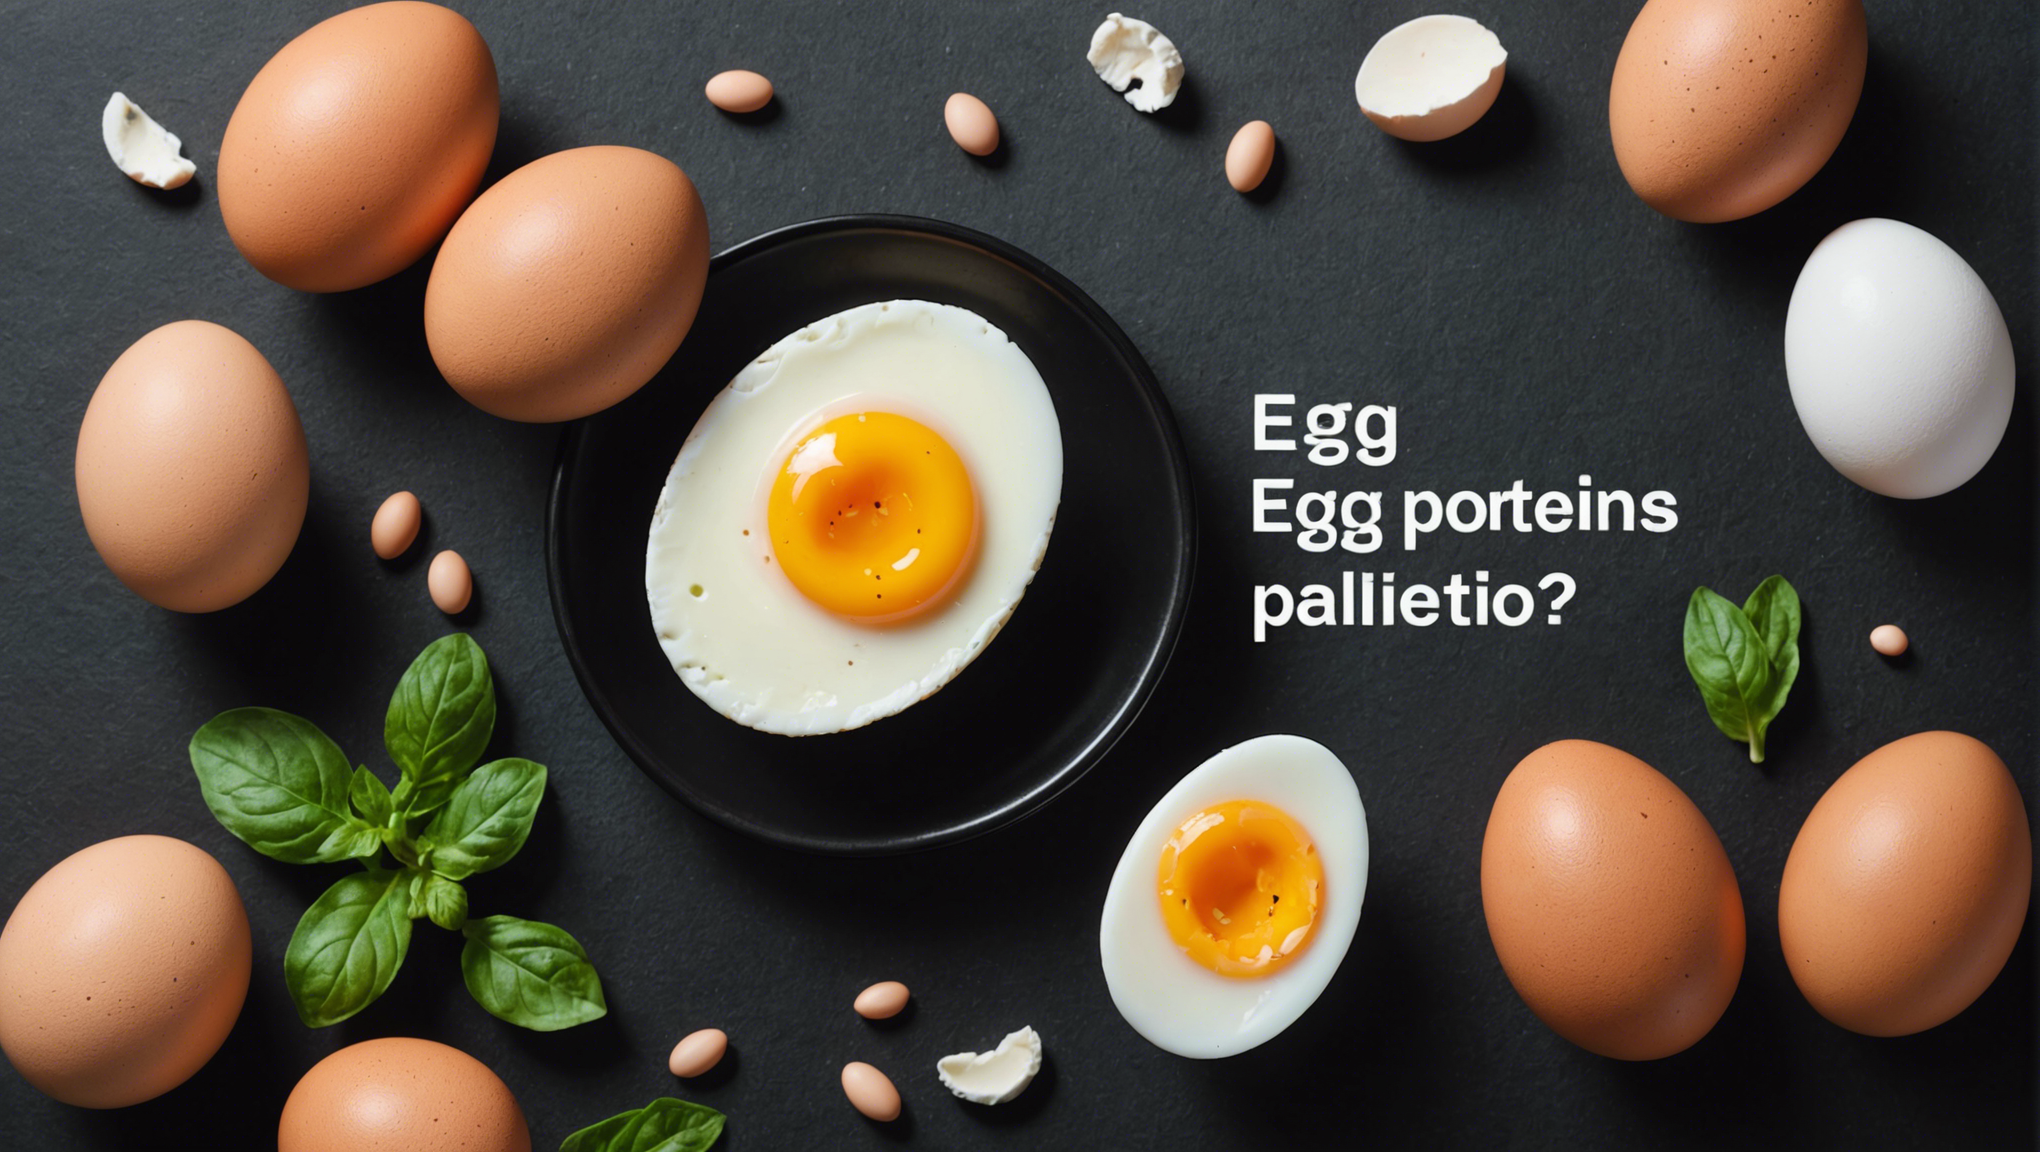 découvrez comment les protéines contenues dans un œuf peuvent contribuer à une alimentation équilibrée et saine.